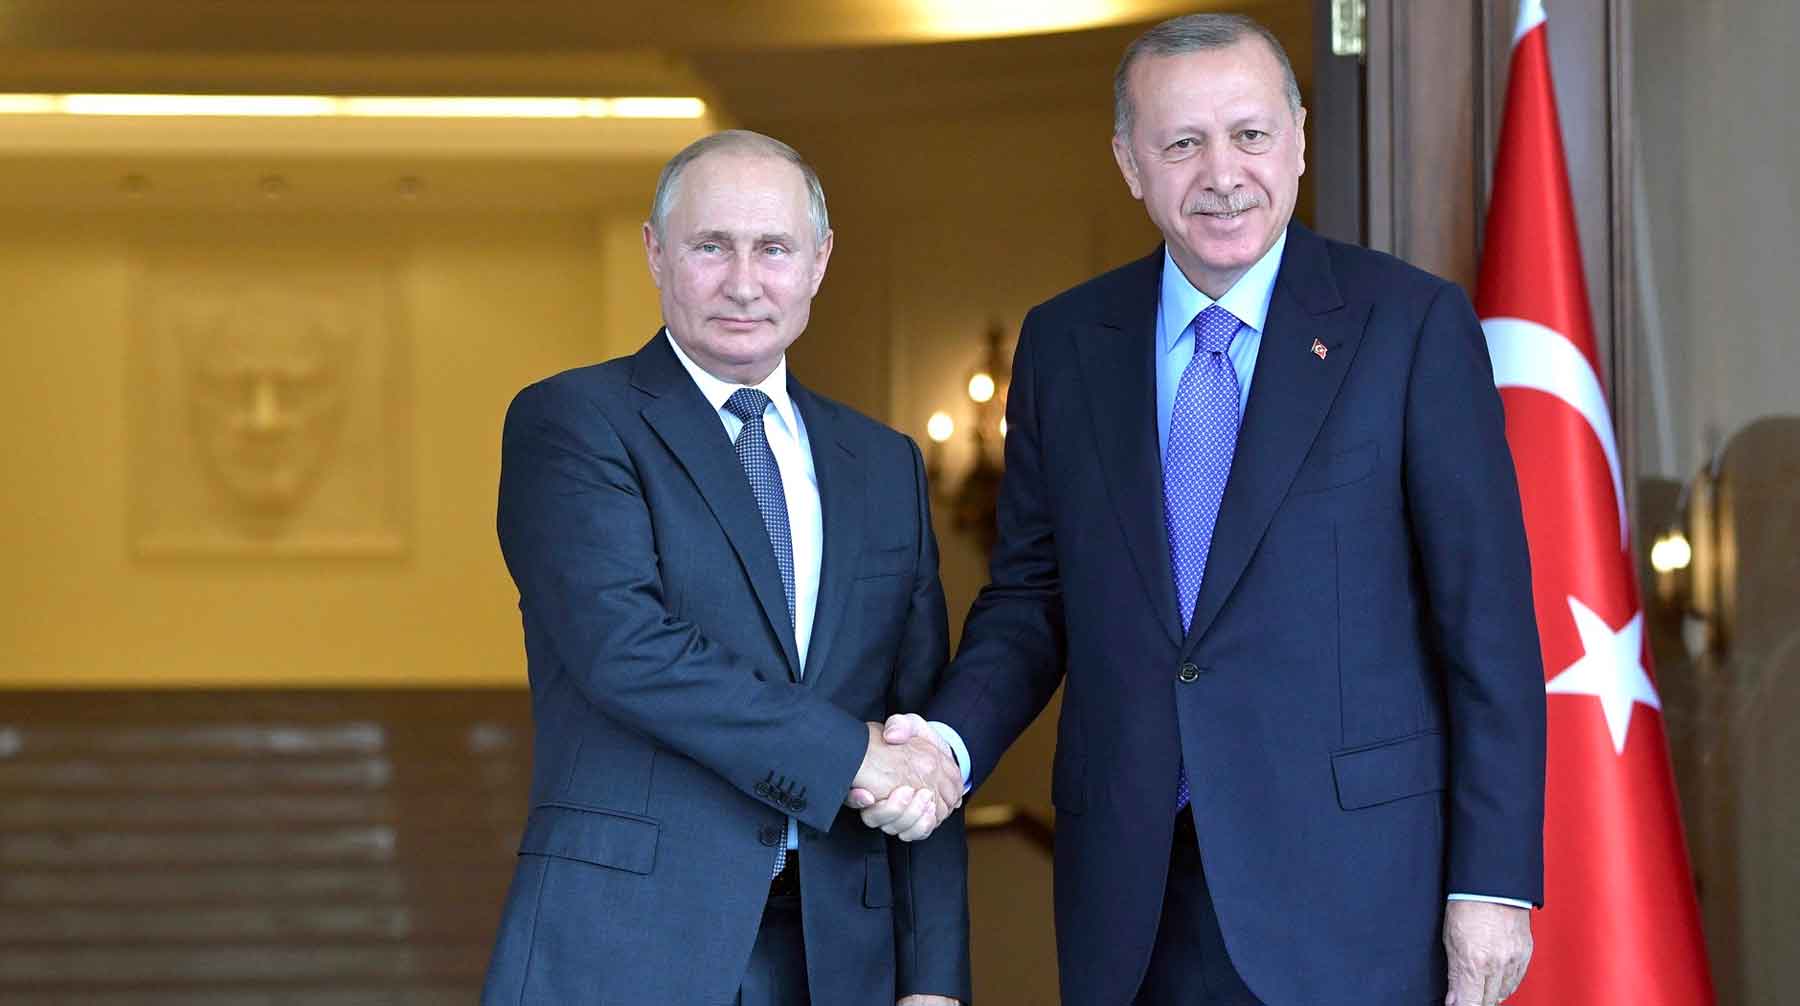 Пресс-секретарь президента РФ рассказал, чем подписанный Россией и Турцией меморандум выгоден Евросоюзу Владимир Путин и Реджеп Тайип Эрдоган